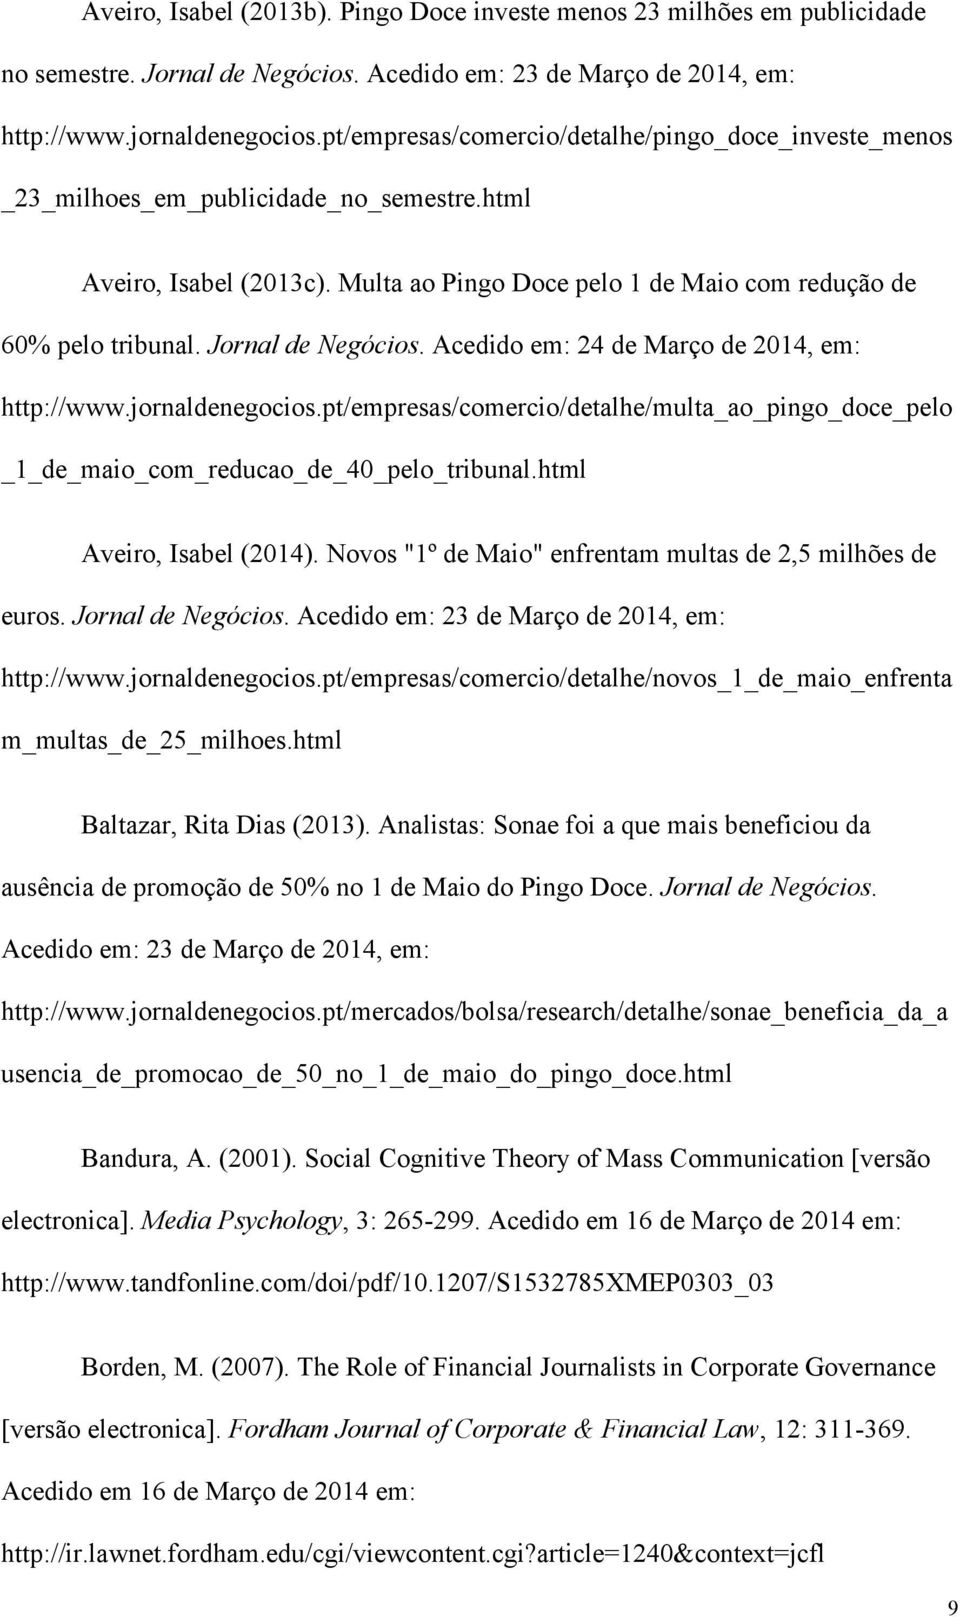 Jornal de Negócios. Acedido em: 24 de Março de 2014, em: http://www.jornaldenegocios.pt/empresas/comercio/detalhe/multa_ao_pingo_doce_pelo _1_de_maio_com_reducao_de_40_pelo_tribunal.